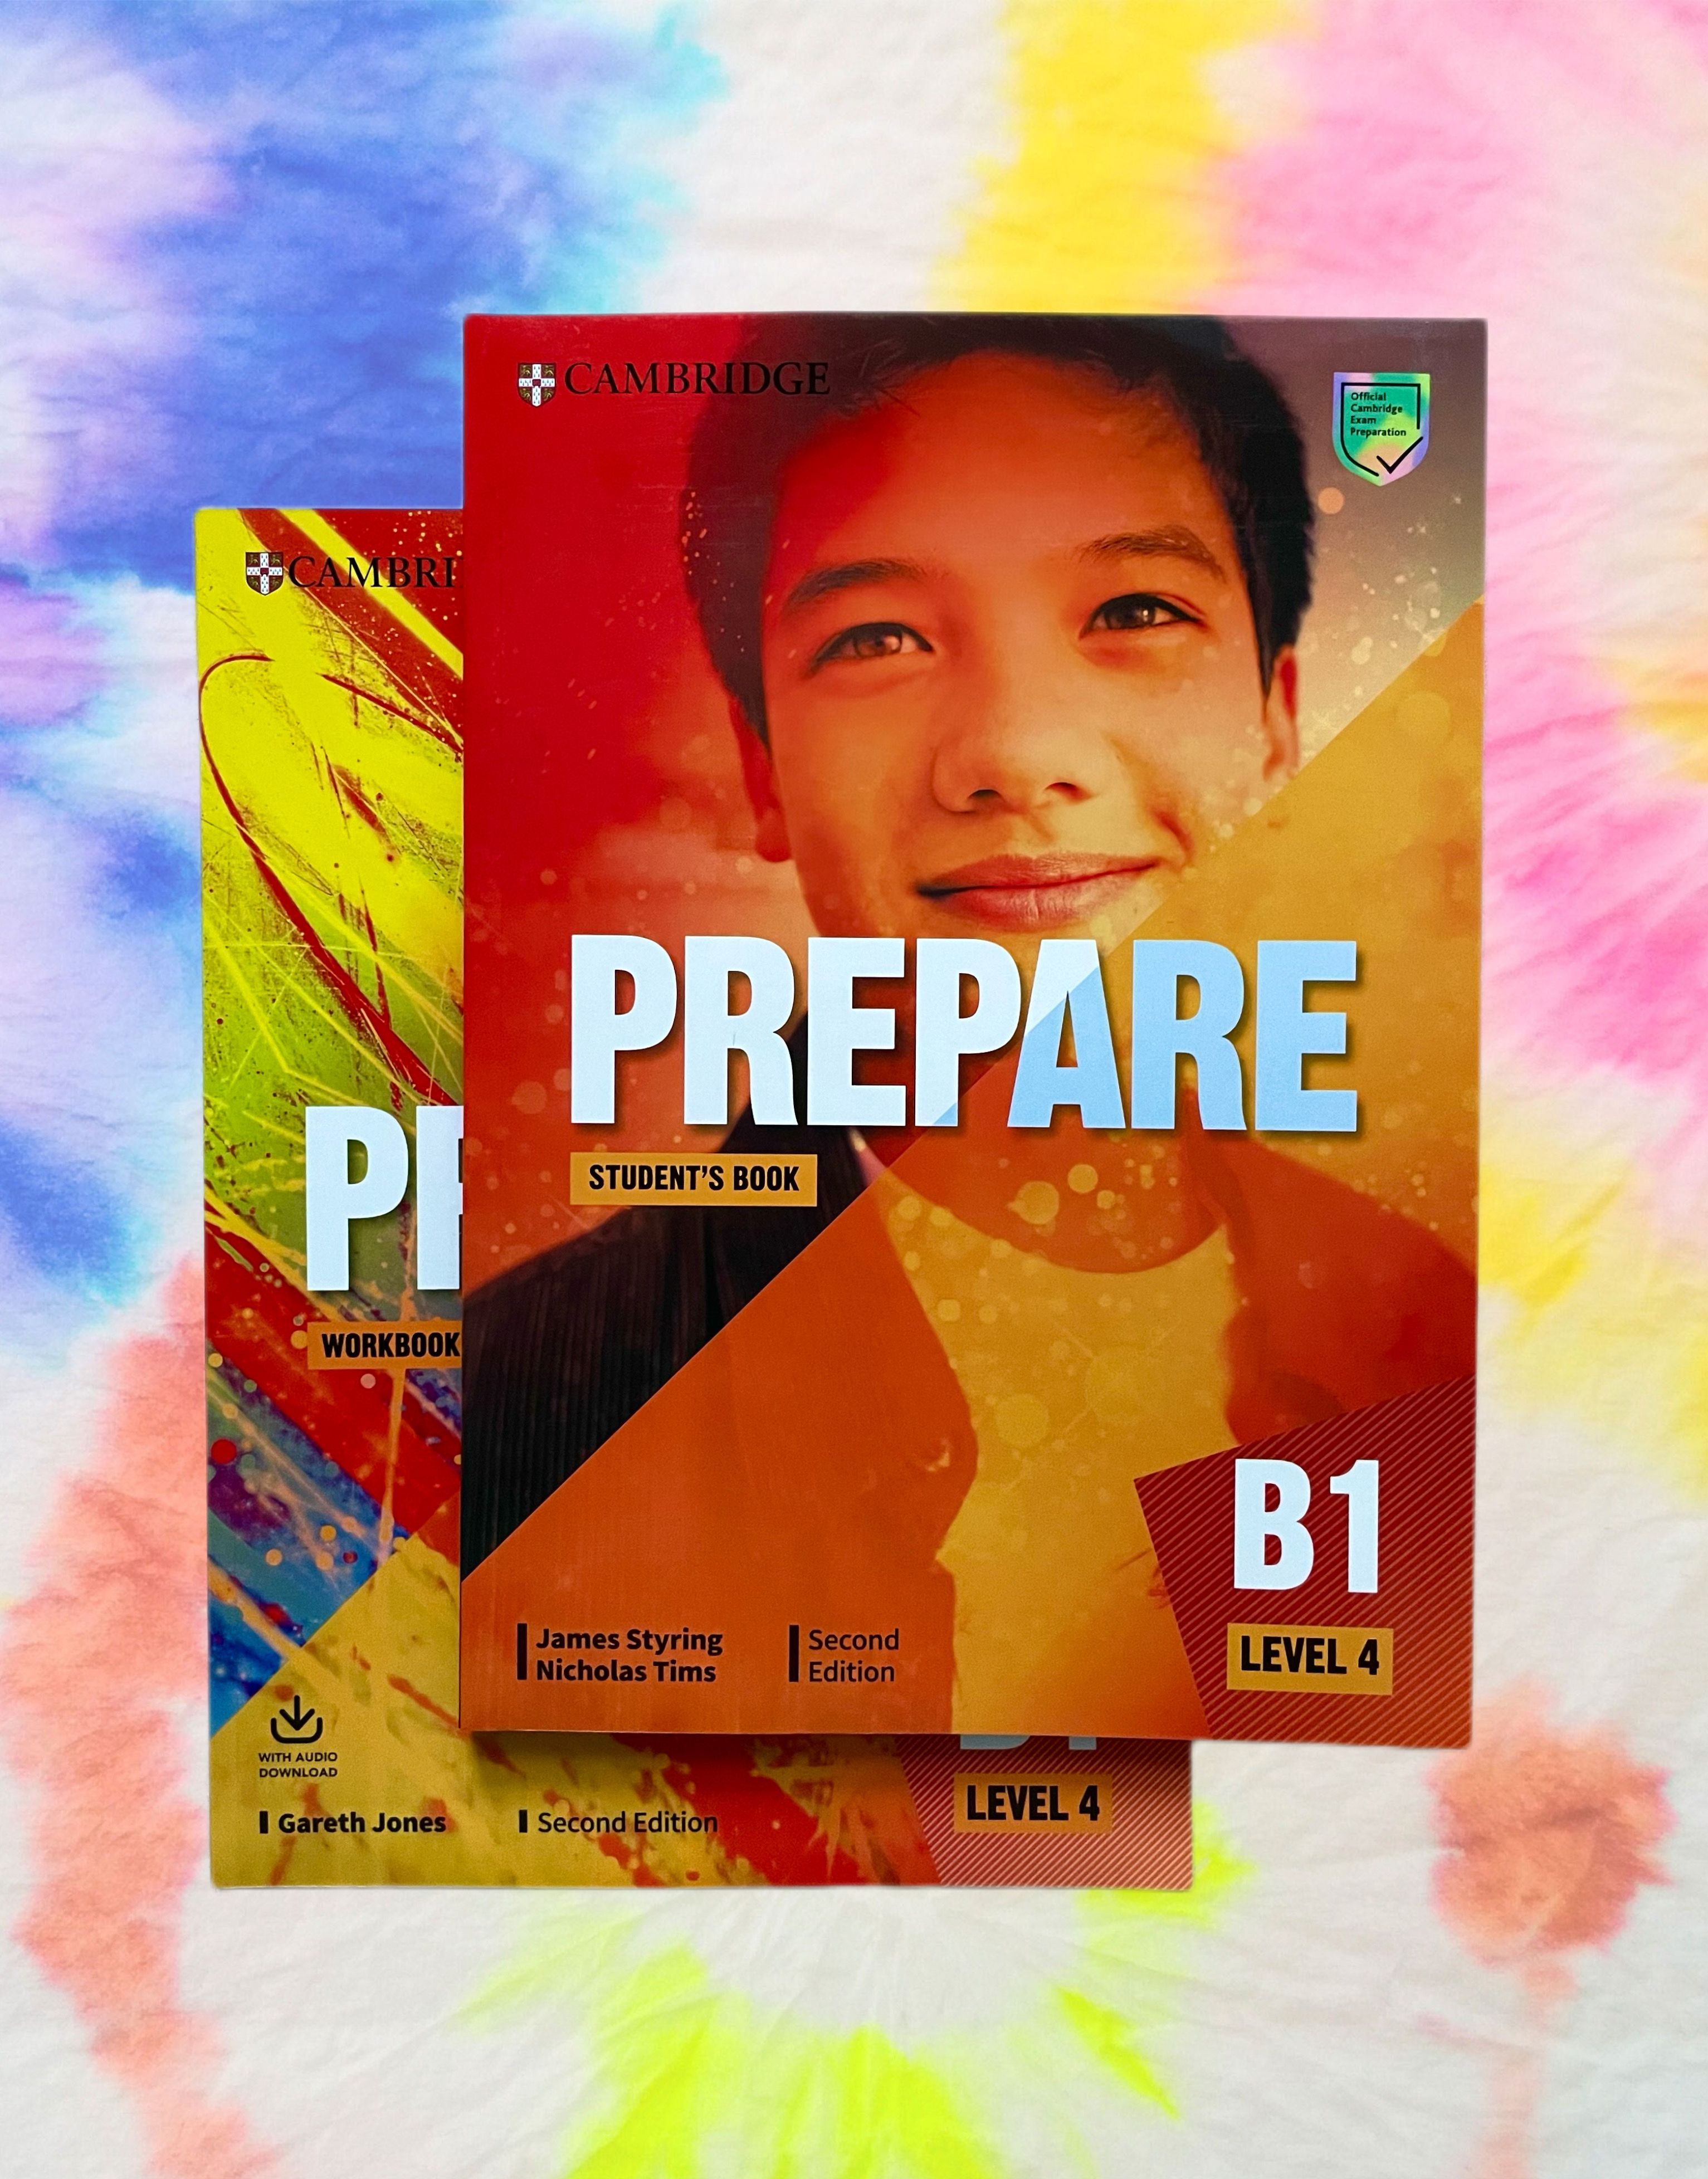 Prepare учебник. Prepare учебник английского. Учебник prepare 4. Prepare Level 4 student's book. Prepare level 4